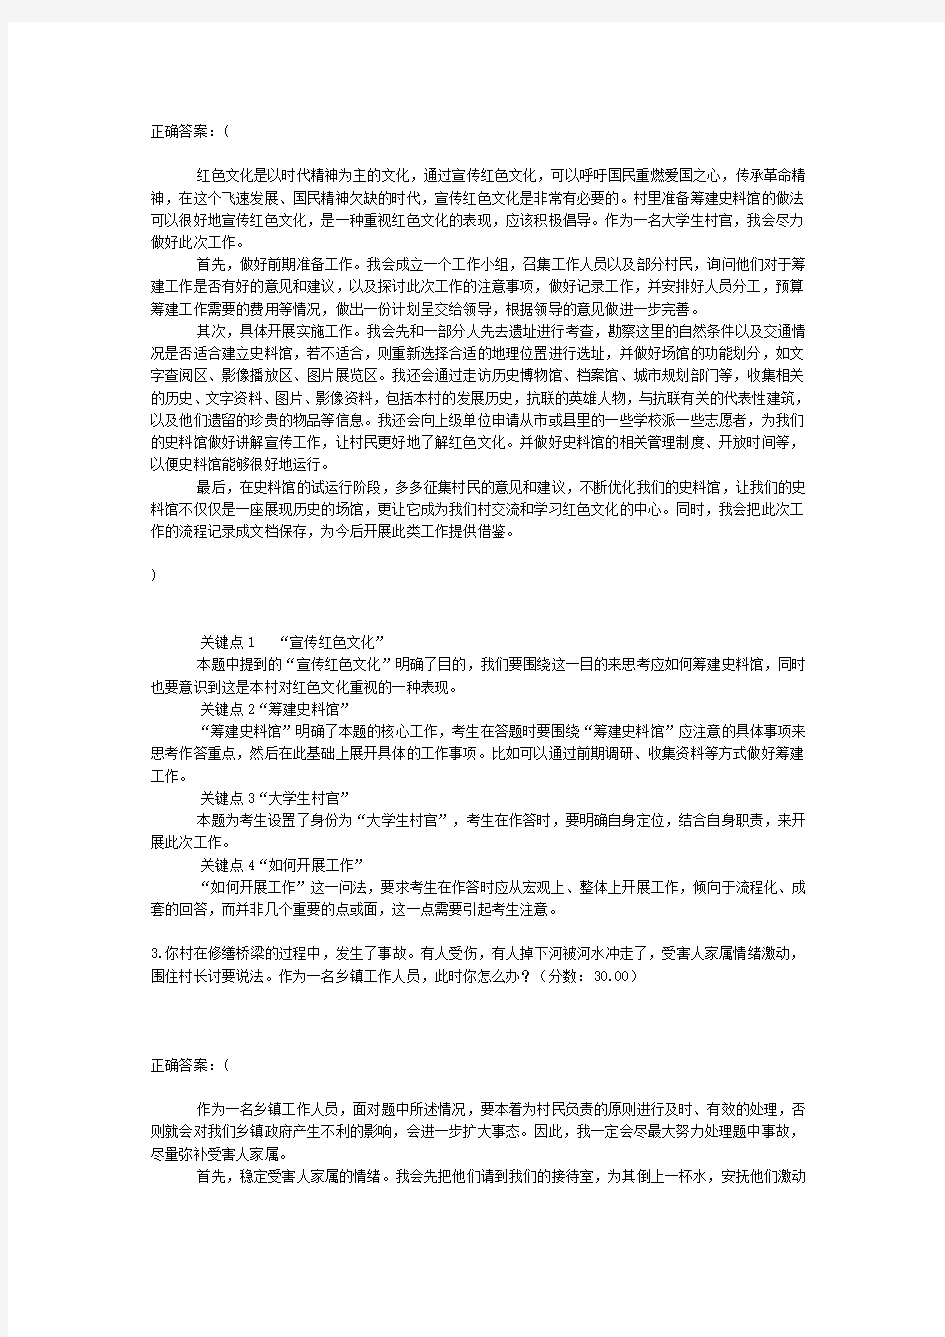  2018年6月30日黑龙江省公务员考试面试真题(艰苦边远地区)